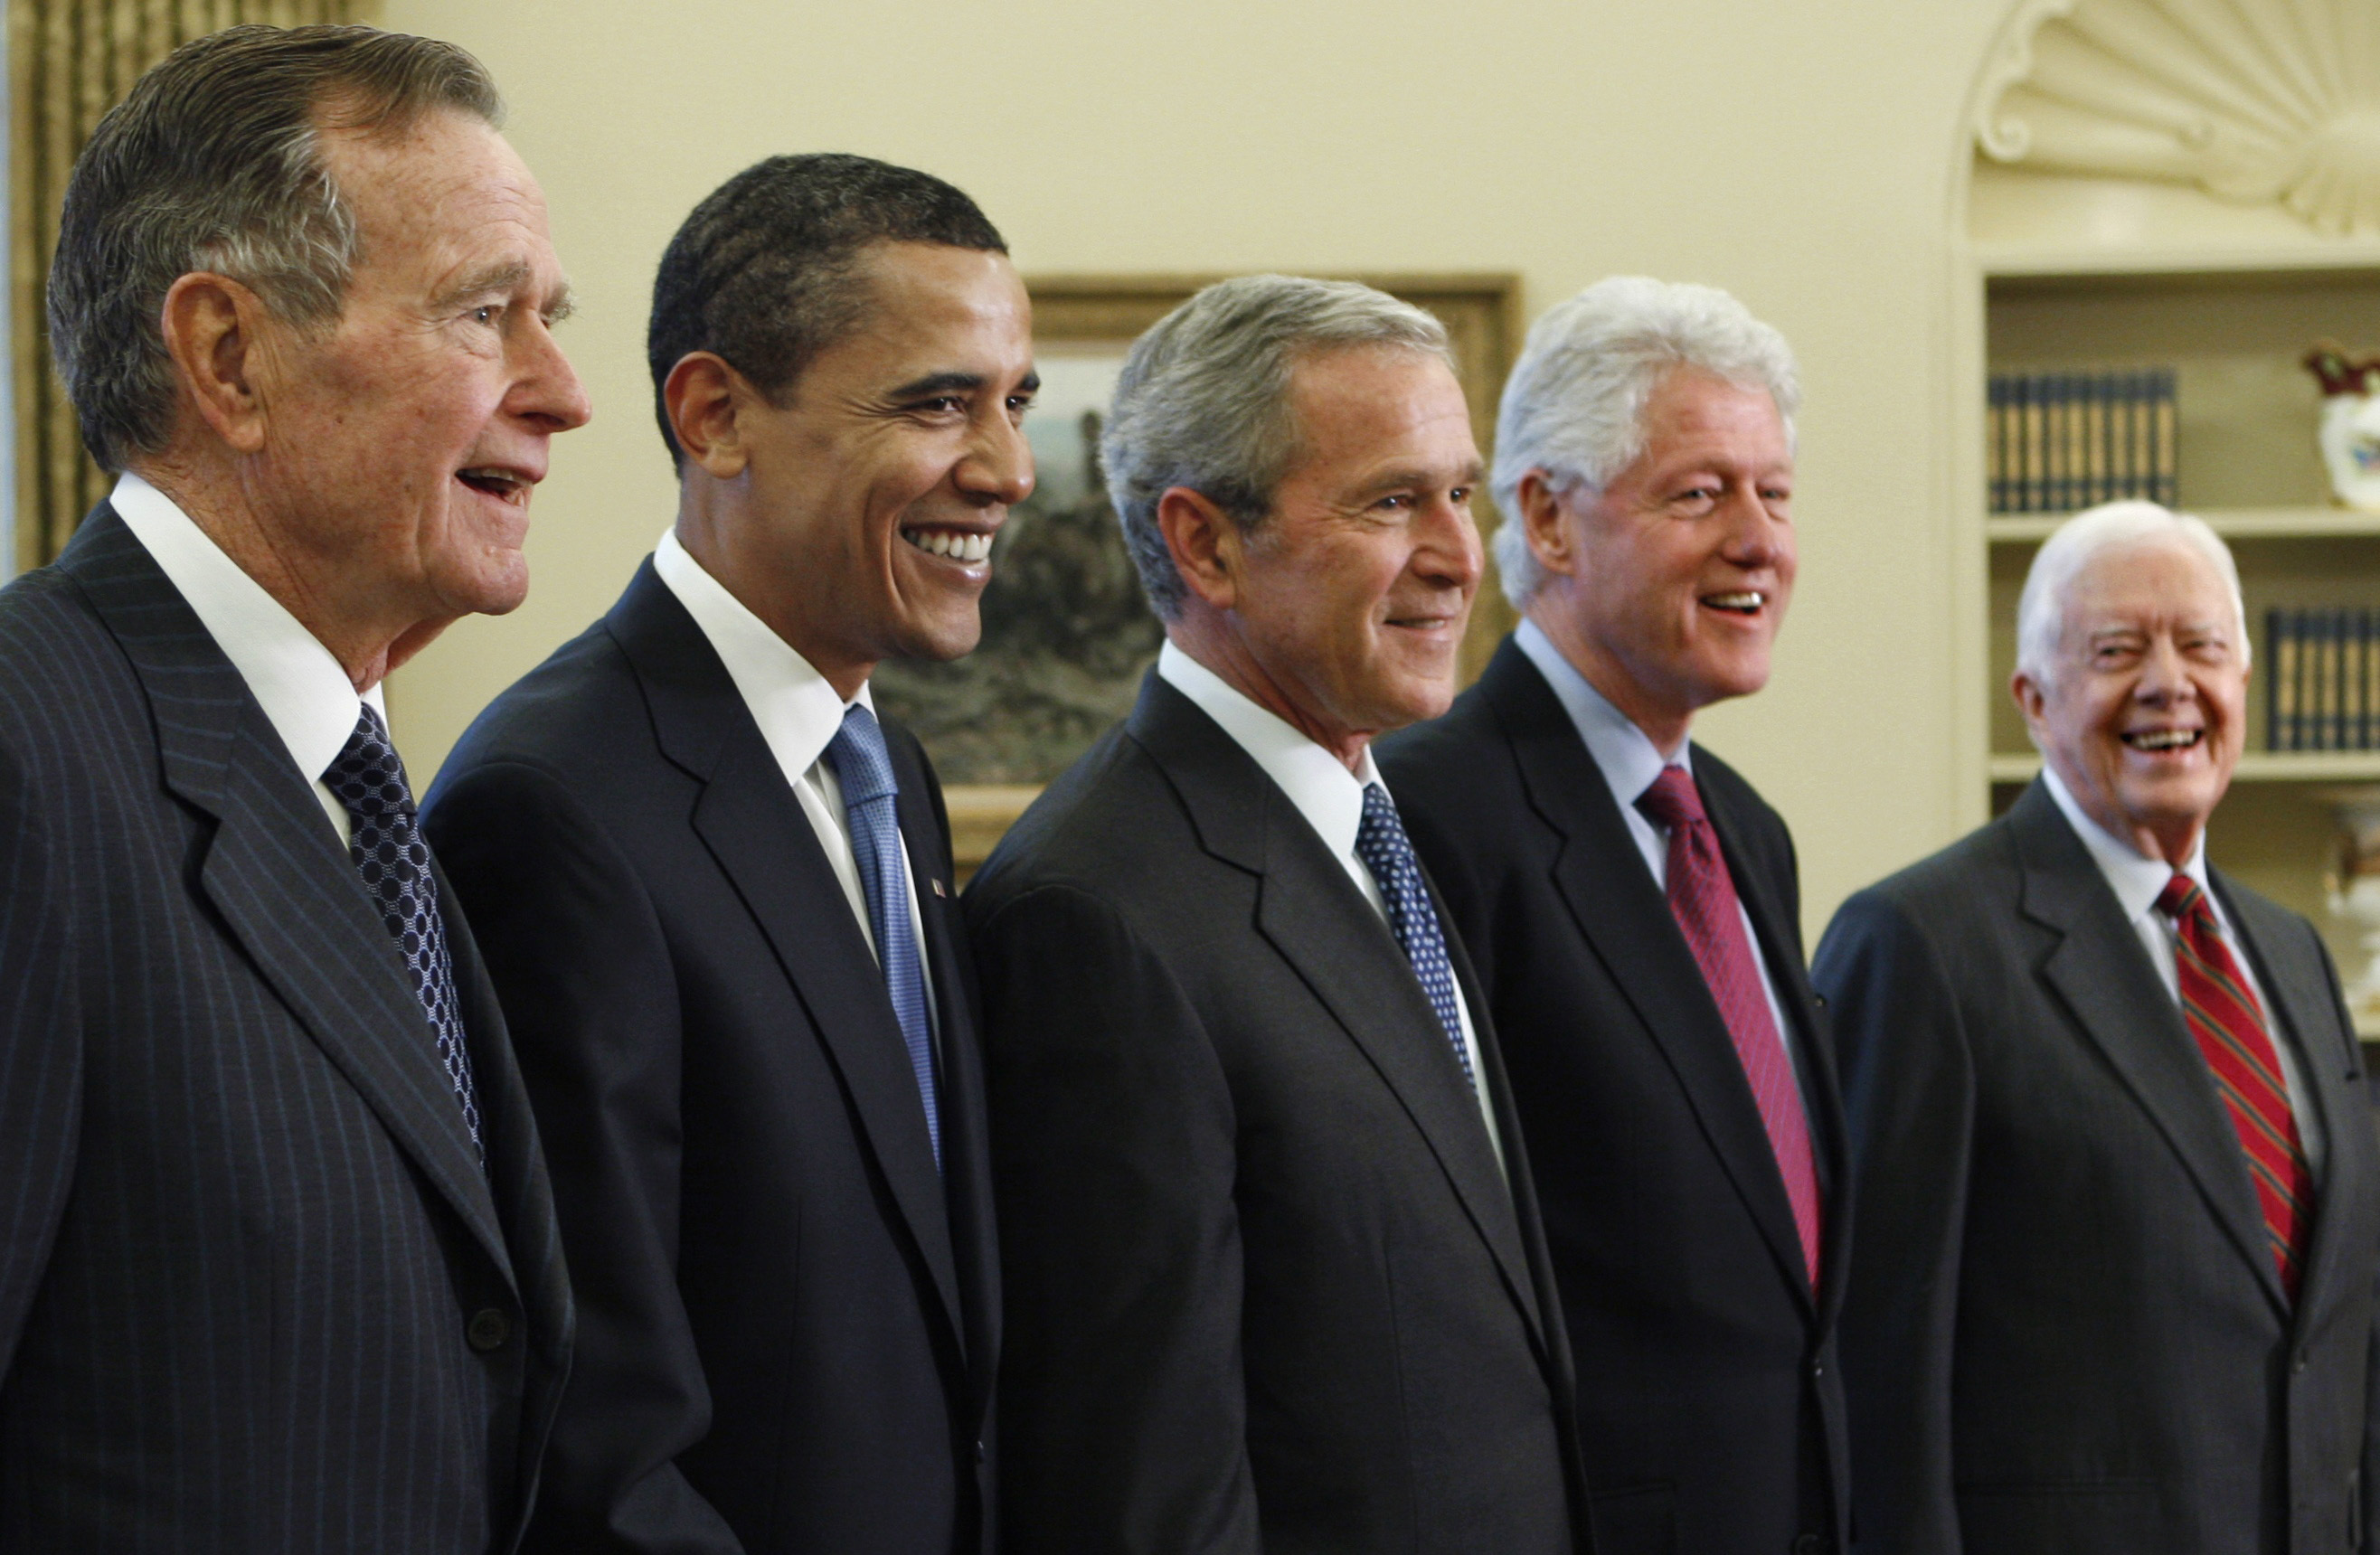 George W. Bush, Barack Obama, Bill Clinton, Jimmy Carter, George H.W. Bush